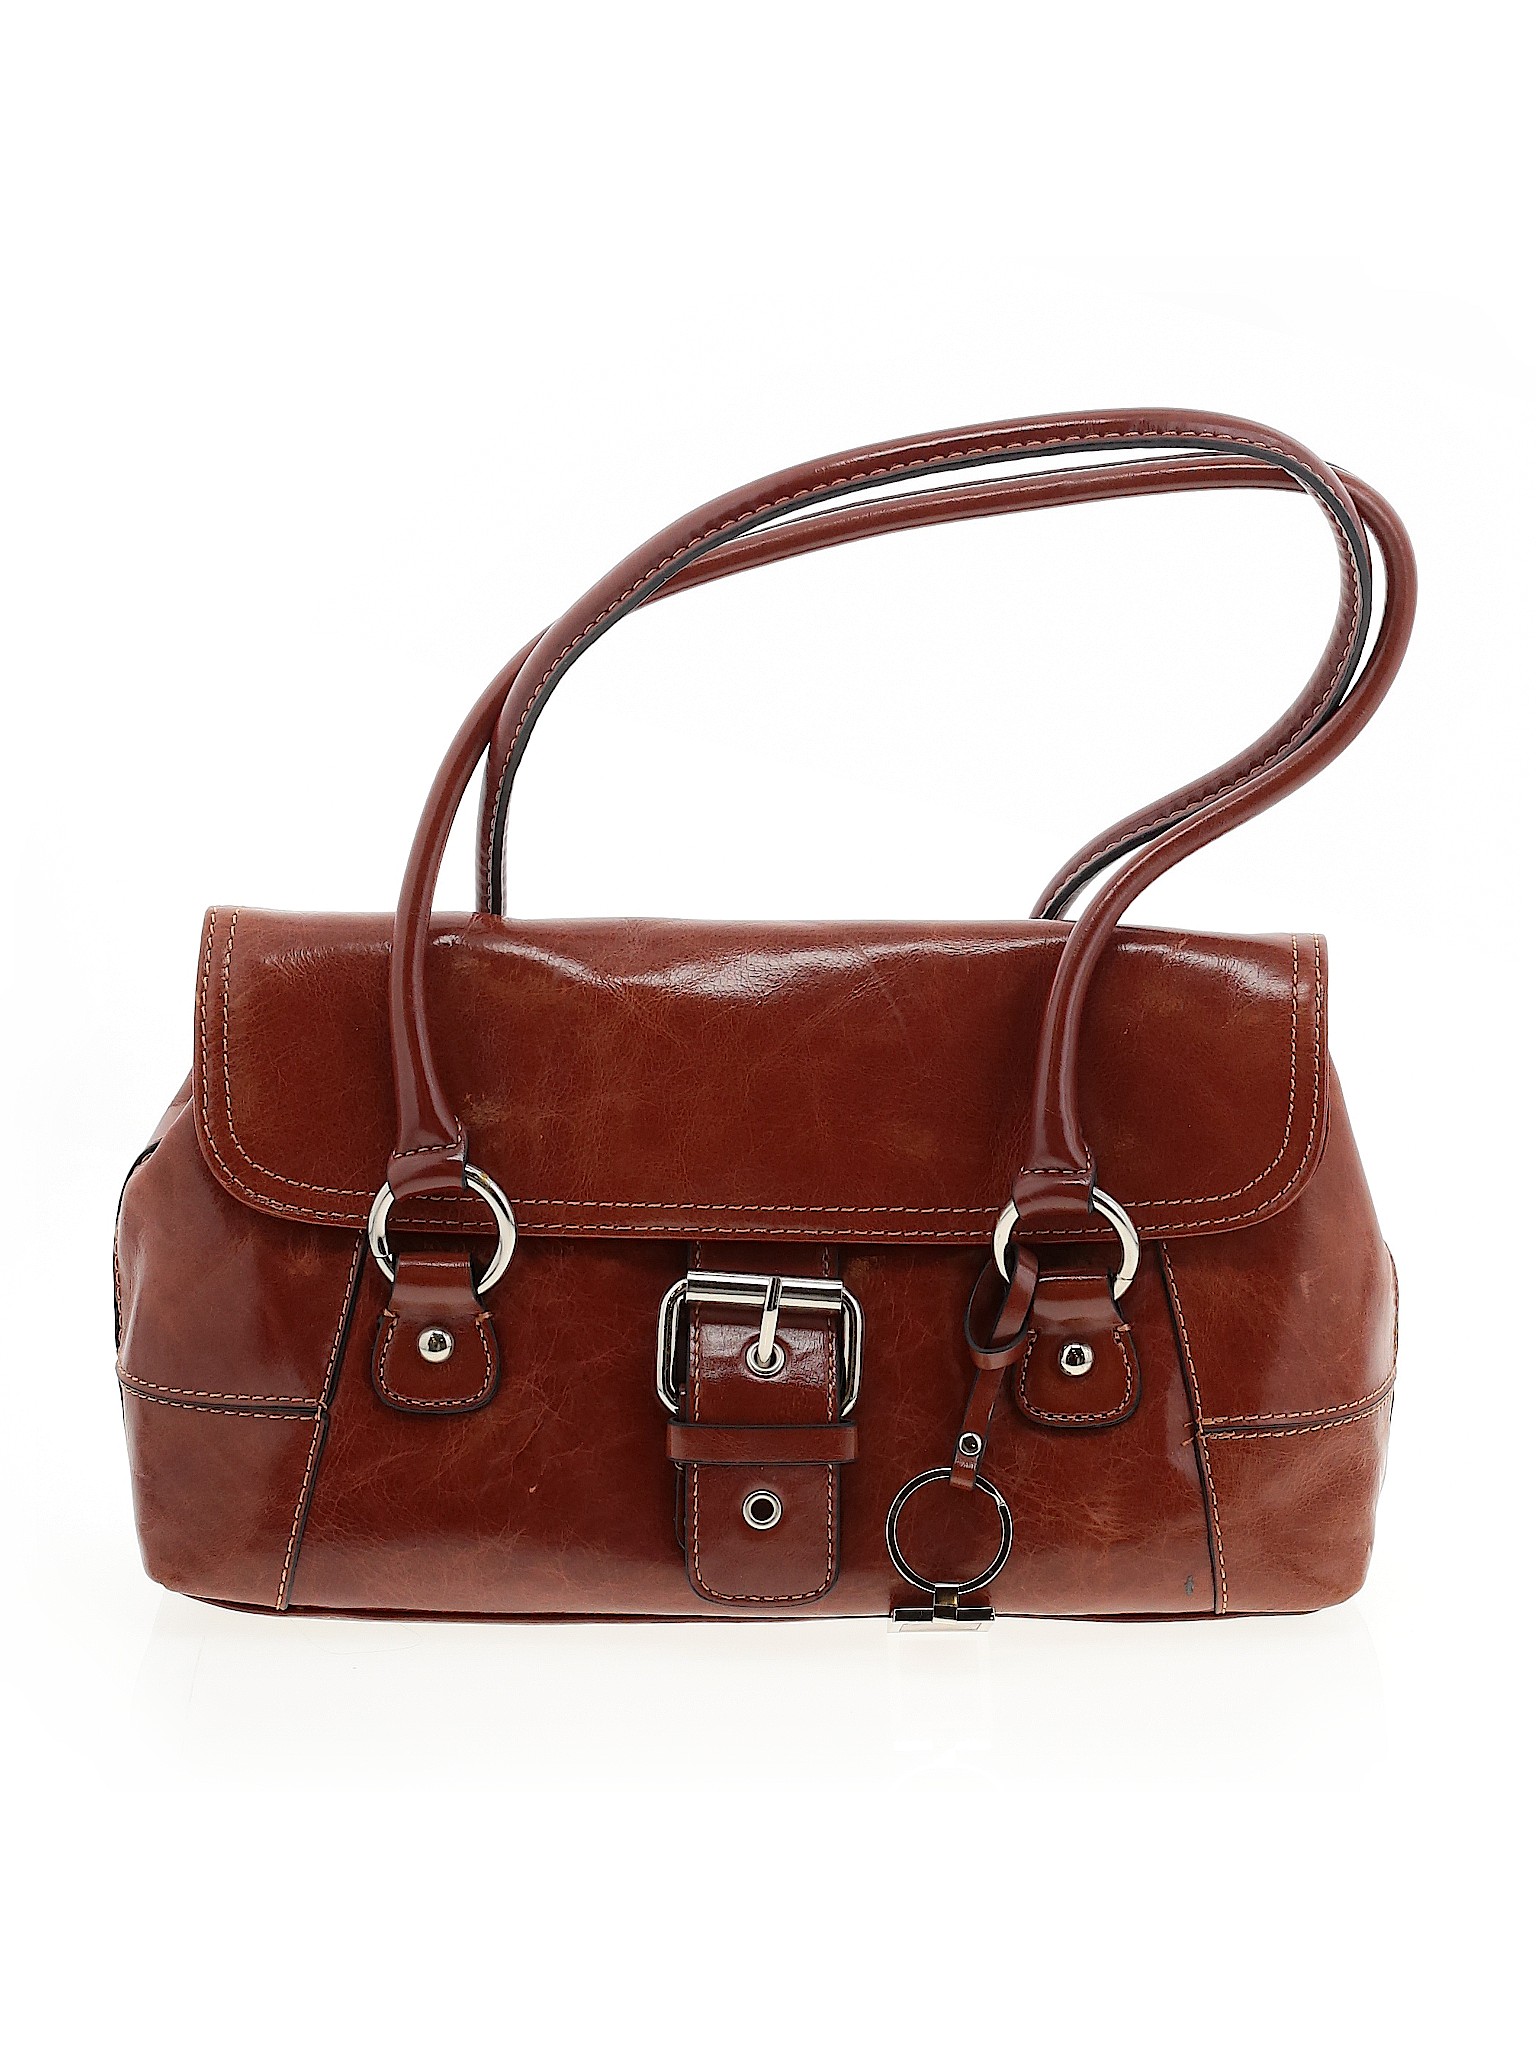 Giani Bernini Solid Brown Shoulder Bag One Size - 72% off | thredUP